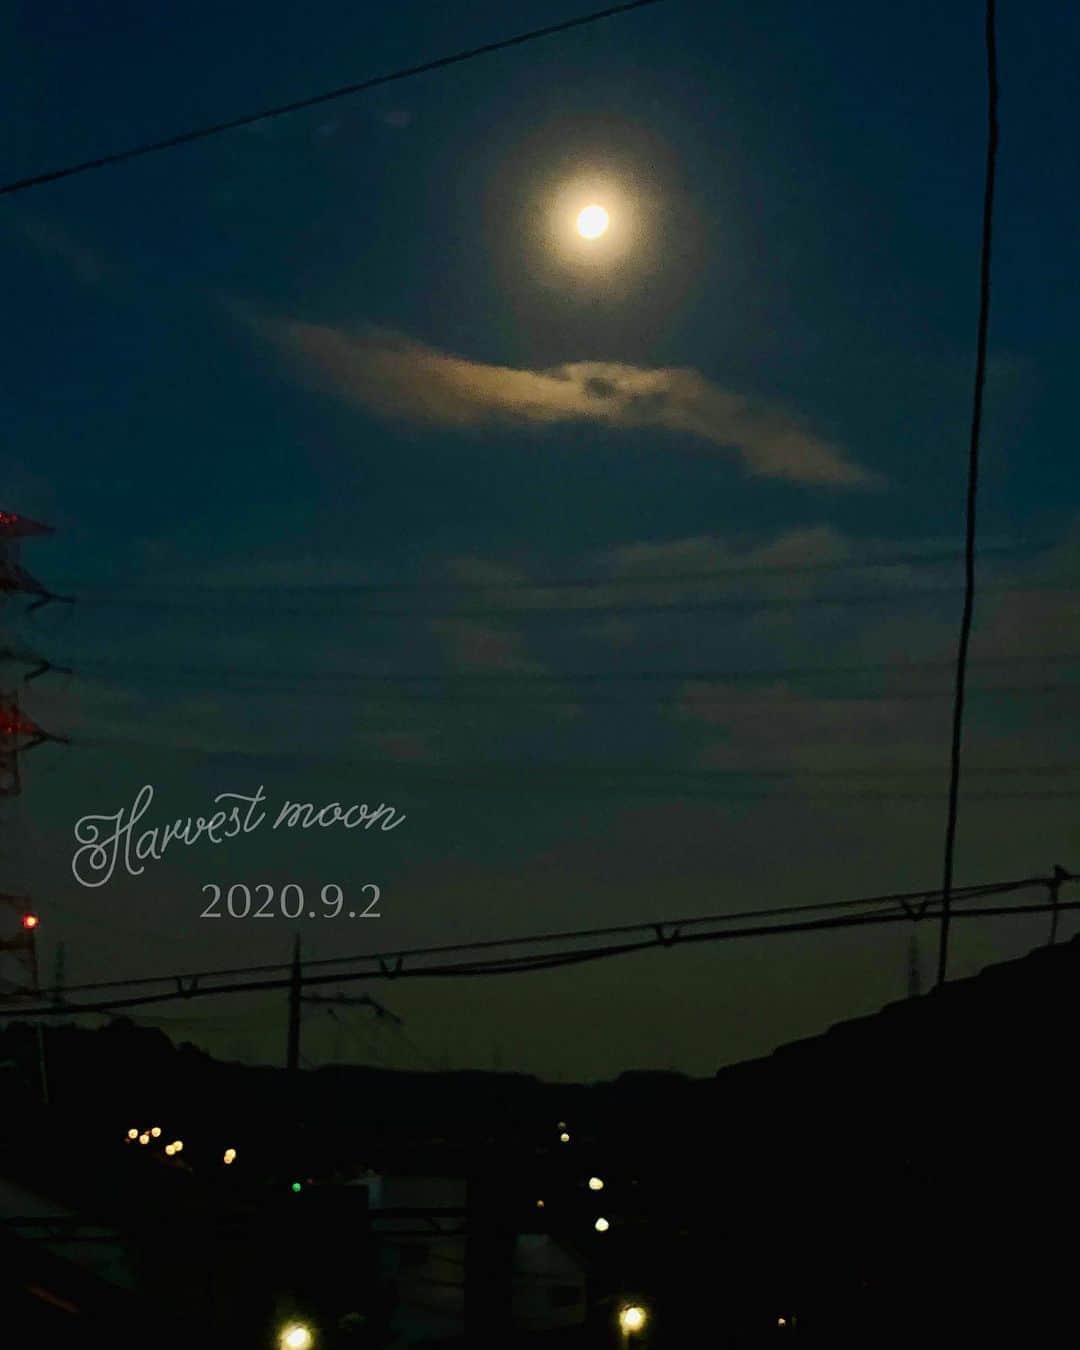 木嶋菜穂子のインスタグラム：「.﻿ 　　﻿ 夜明けの満月と、龍﻿ ﻿ 満月は、﻿ 月ごとに名前があるらしく、﻿ ﻿ 9月は﻿ Harvest moon﻿ というらしい🌙﻿ ﻿ 秋の満月らしい素敵な名前♡﻿ ﻿ ﻿ ﻿ 最近、4:50に起きて﻿ 寝起きでテラスにでると﻿ ﻿ まだ薄暗く、﻿ 夜の続きの空で﻿ ﻿ ﻿ 夜明けにむけて変わっていく空が﻿ おだやかで﻿ きれいで、﻿ ﻿ 大きな自然のエネルギーに﻿ 毎朝リセットされています✨﻿ ﻿ ﻿ ﻿ 昨日は、﻿ ﻿ 満月の下に﻿ 雲の龍が🐉いて、﻿ ﻿ なんともいえない神秘的な空。﻿ ﻿ ﻿ ﻿ 見ているうちに広がって﻿ 月のまわりで﻿ 虹色の輪になって﻿ ふわっと消えてしまったけど﻿ ﻿ そのまま右のほうを見ると﻿ ﻿ ﻿ ﻿ 月が目になるあたりから﻿ めちゃくちゃ大きな雲の龍が﻿ ﻿ これぞ龍🐉という姿で 空に悠々ひろがっていて﻿ ﻿﻿ また見とれてしまいました。﻿ ﻿ ﻿ ﻿ この空の変化、﻿ たった10分くらいのこと。﻿ ﻿ 5時すぎには﻿ なにもなかったかのような﻿ 明るい青い空が広がっていて、﻿ また新しい一日のはじまり。﻿ ﻿ ﻿ ﻿ 今、変化のなかにいる私に﻿ なにかメッセージだったのかな☺️﻿ ﻿ ﻿ とにかく今は、﻿ ﻿ 目の前の一瞬を大切に﻿ ﻿ やることに淡々とむきあって﻿ 目の前の世界を変えていこう♡﻿ ﻿ ﻿ #満月」